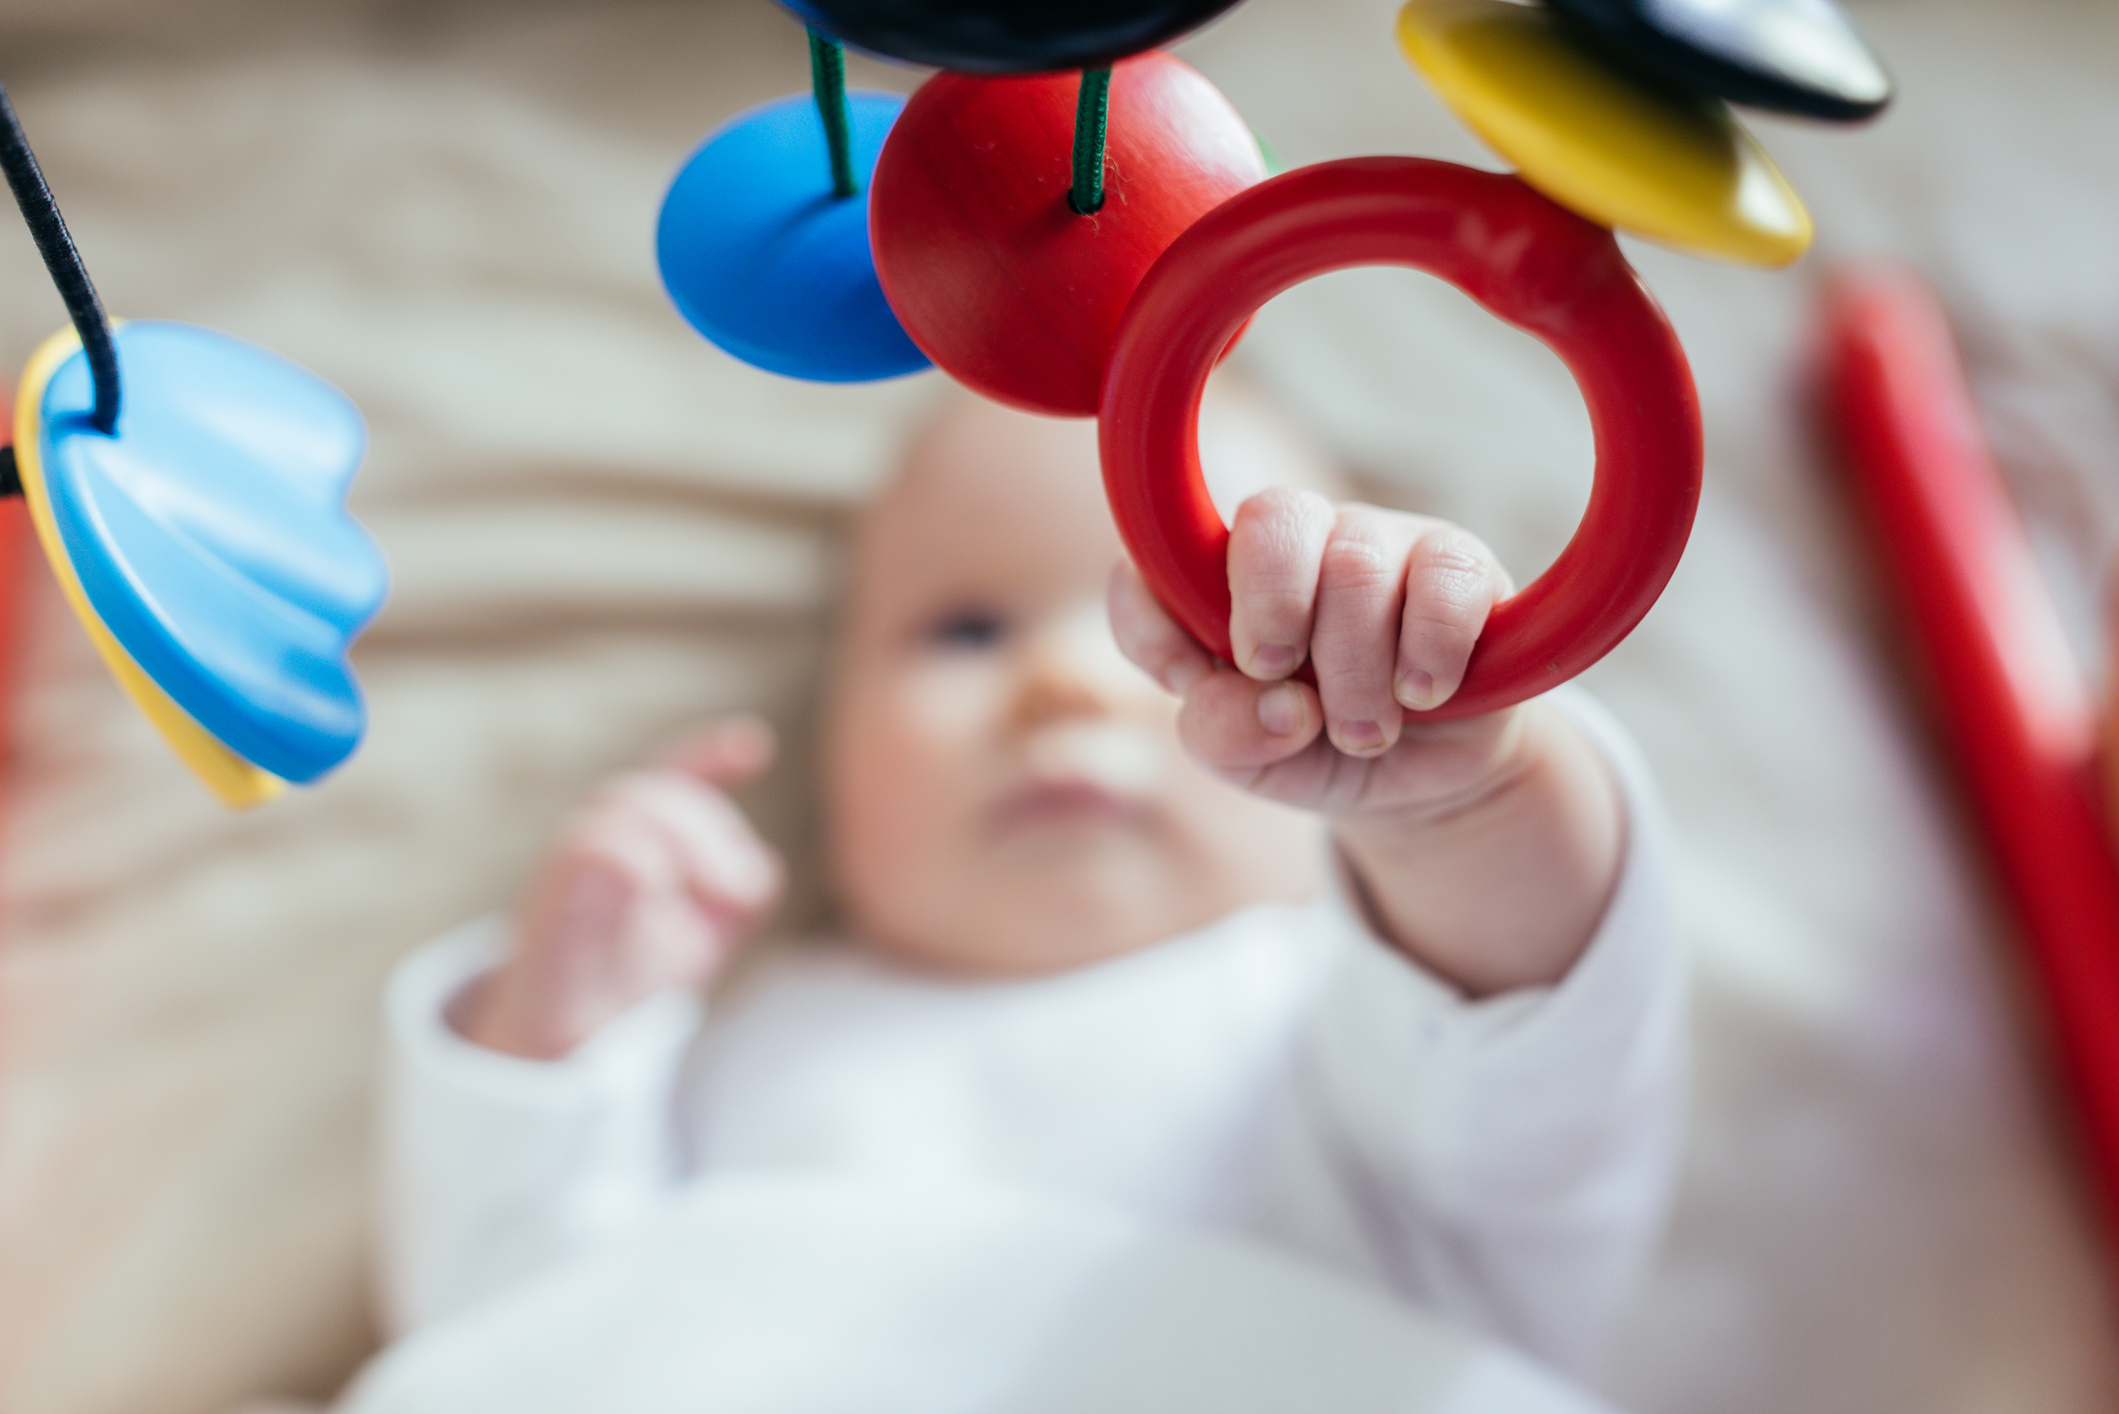 Шарени играчки стимулират зрението на бебето  